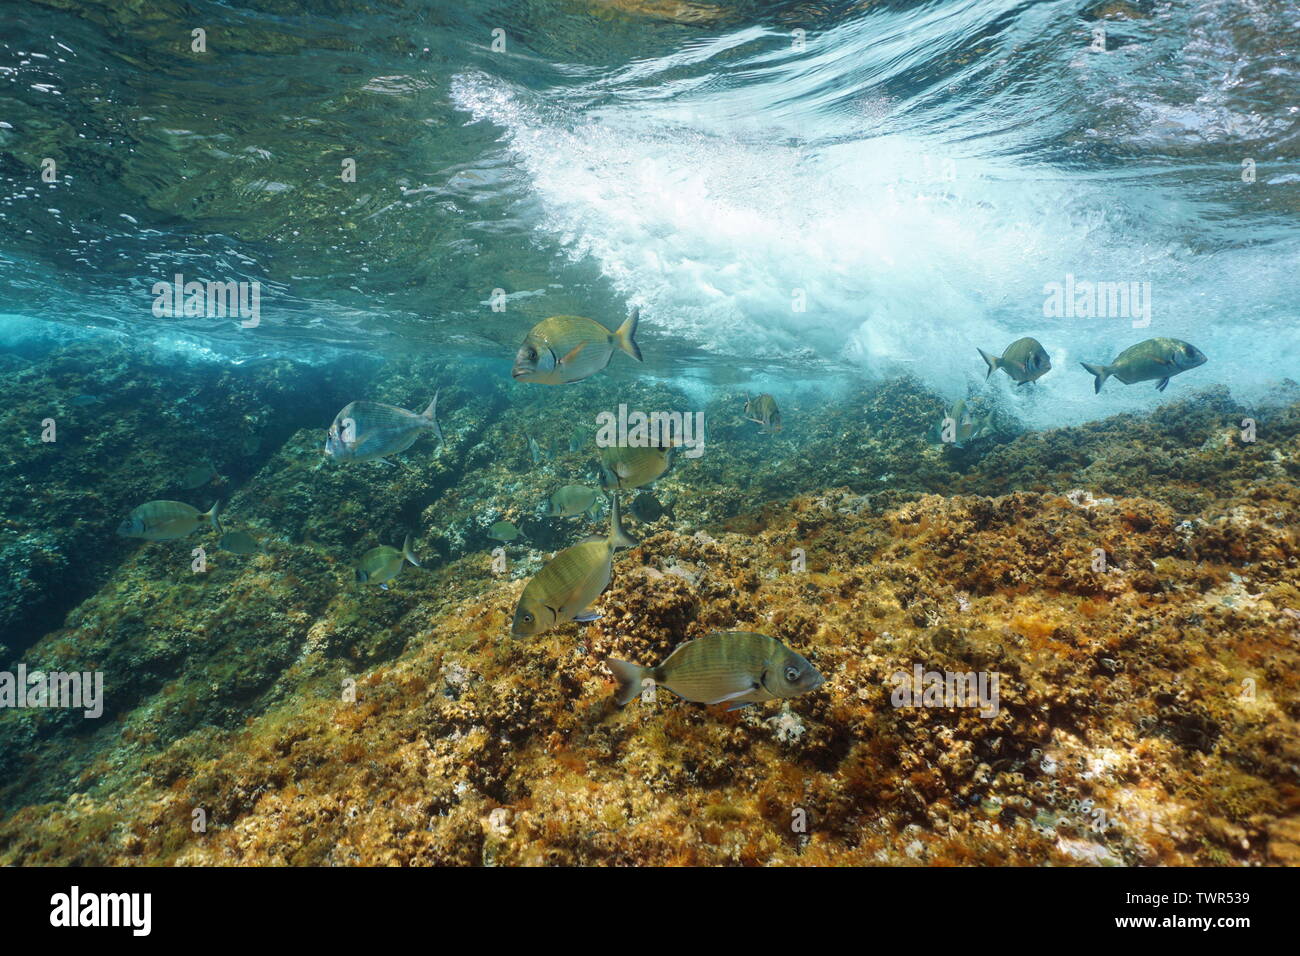 Seabreams Fisch mit Wave brechen auf Felsen unter Wasser in Mittelmeer, Côte d'Azur, Frankreich Stockfoto